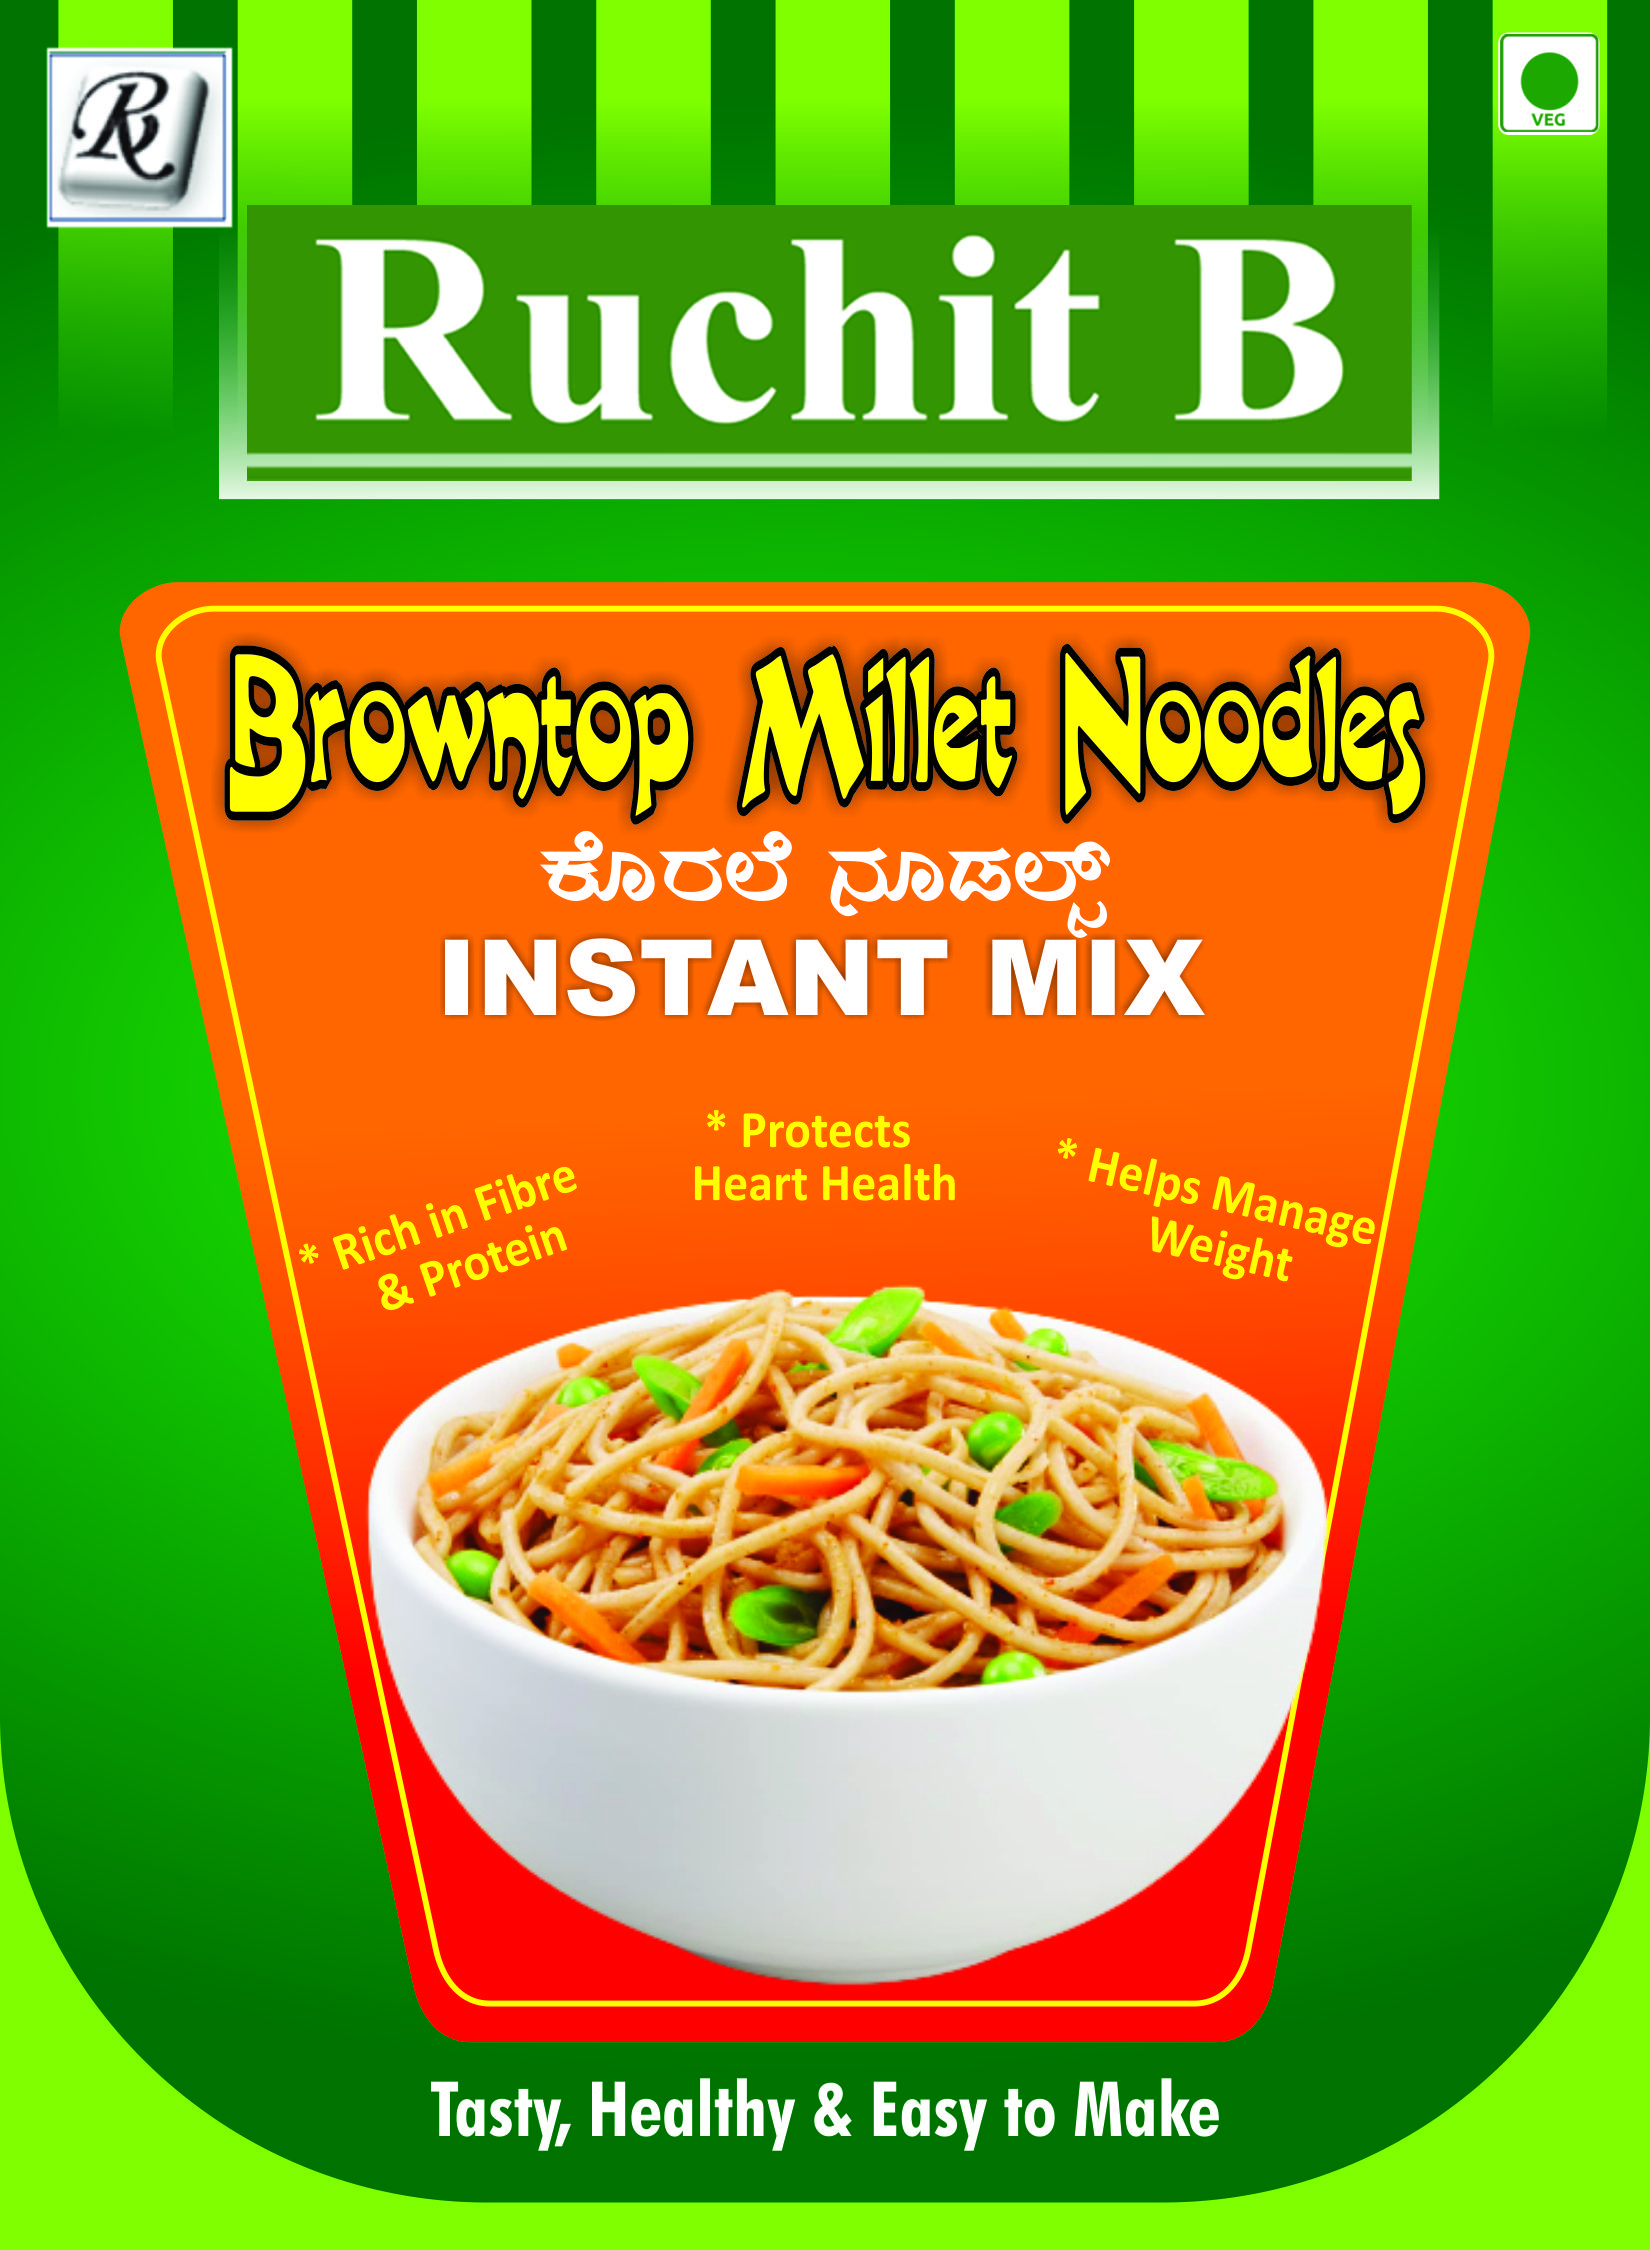 Browntop Millet Noodles